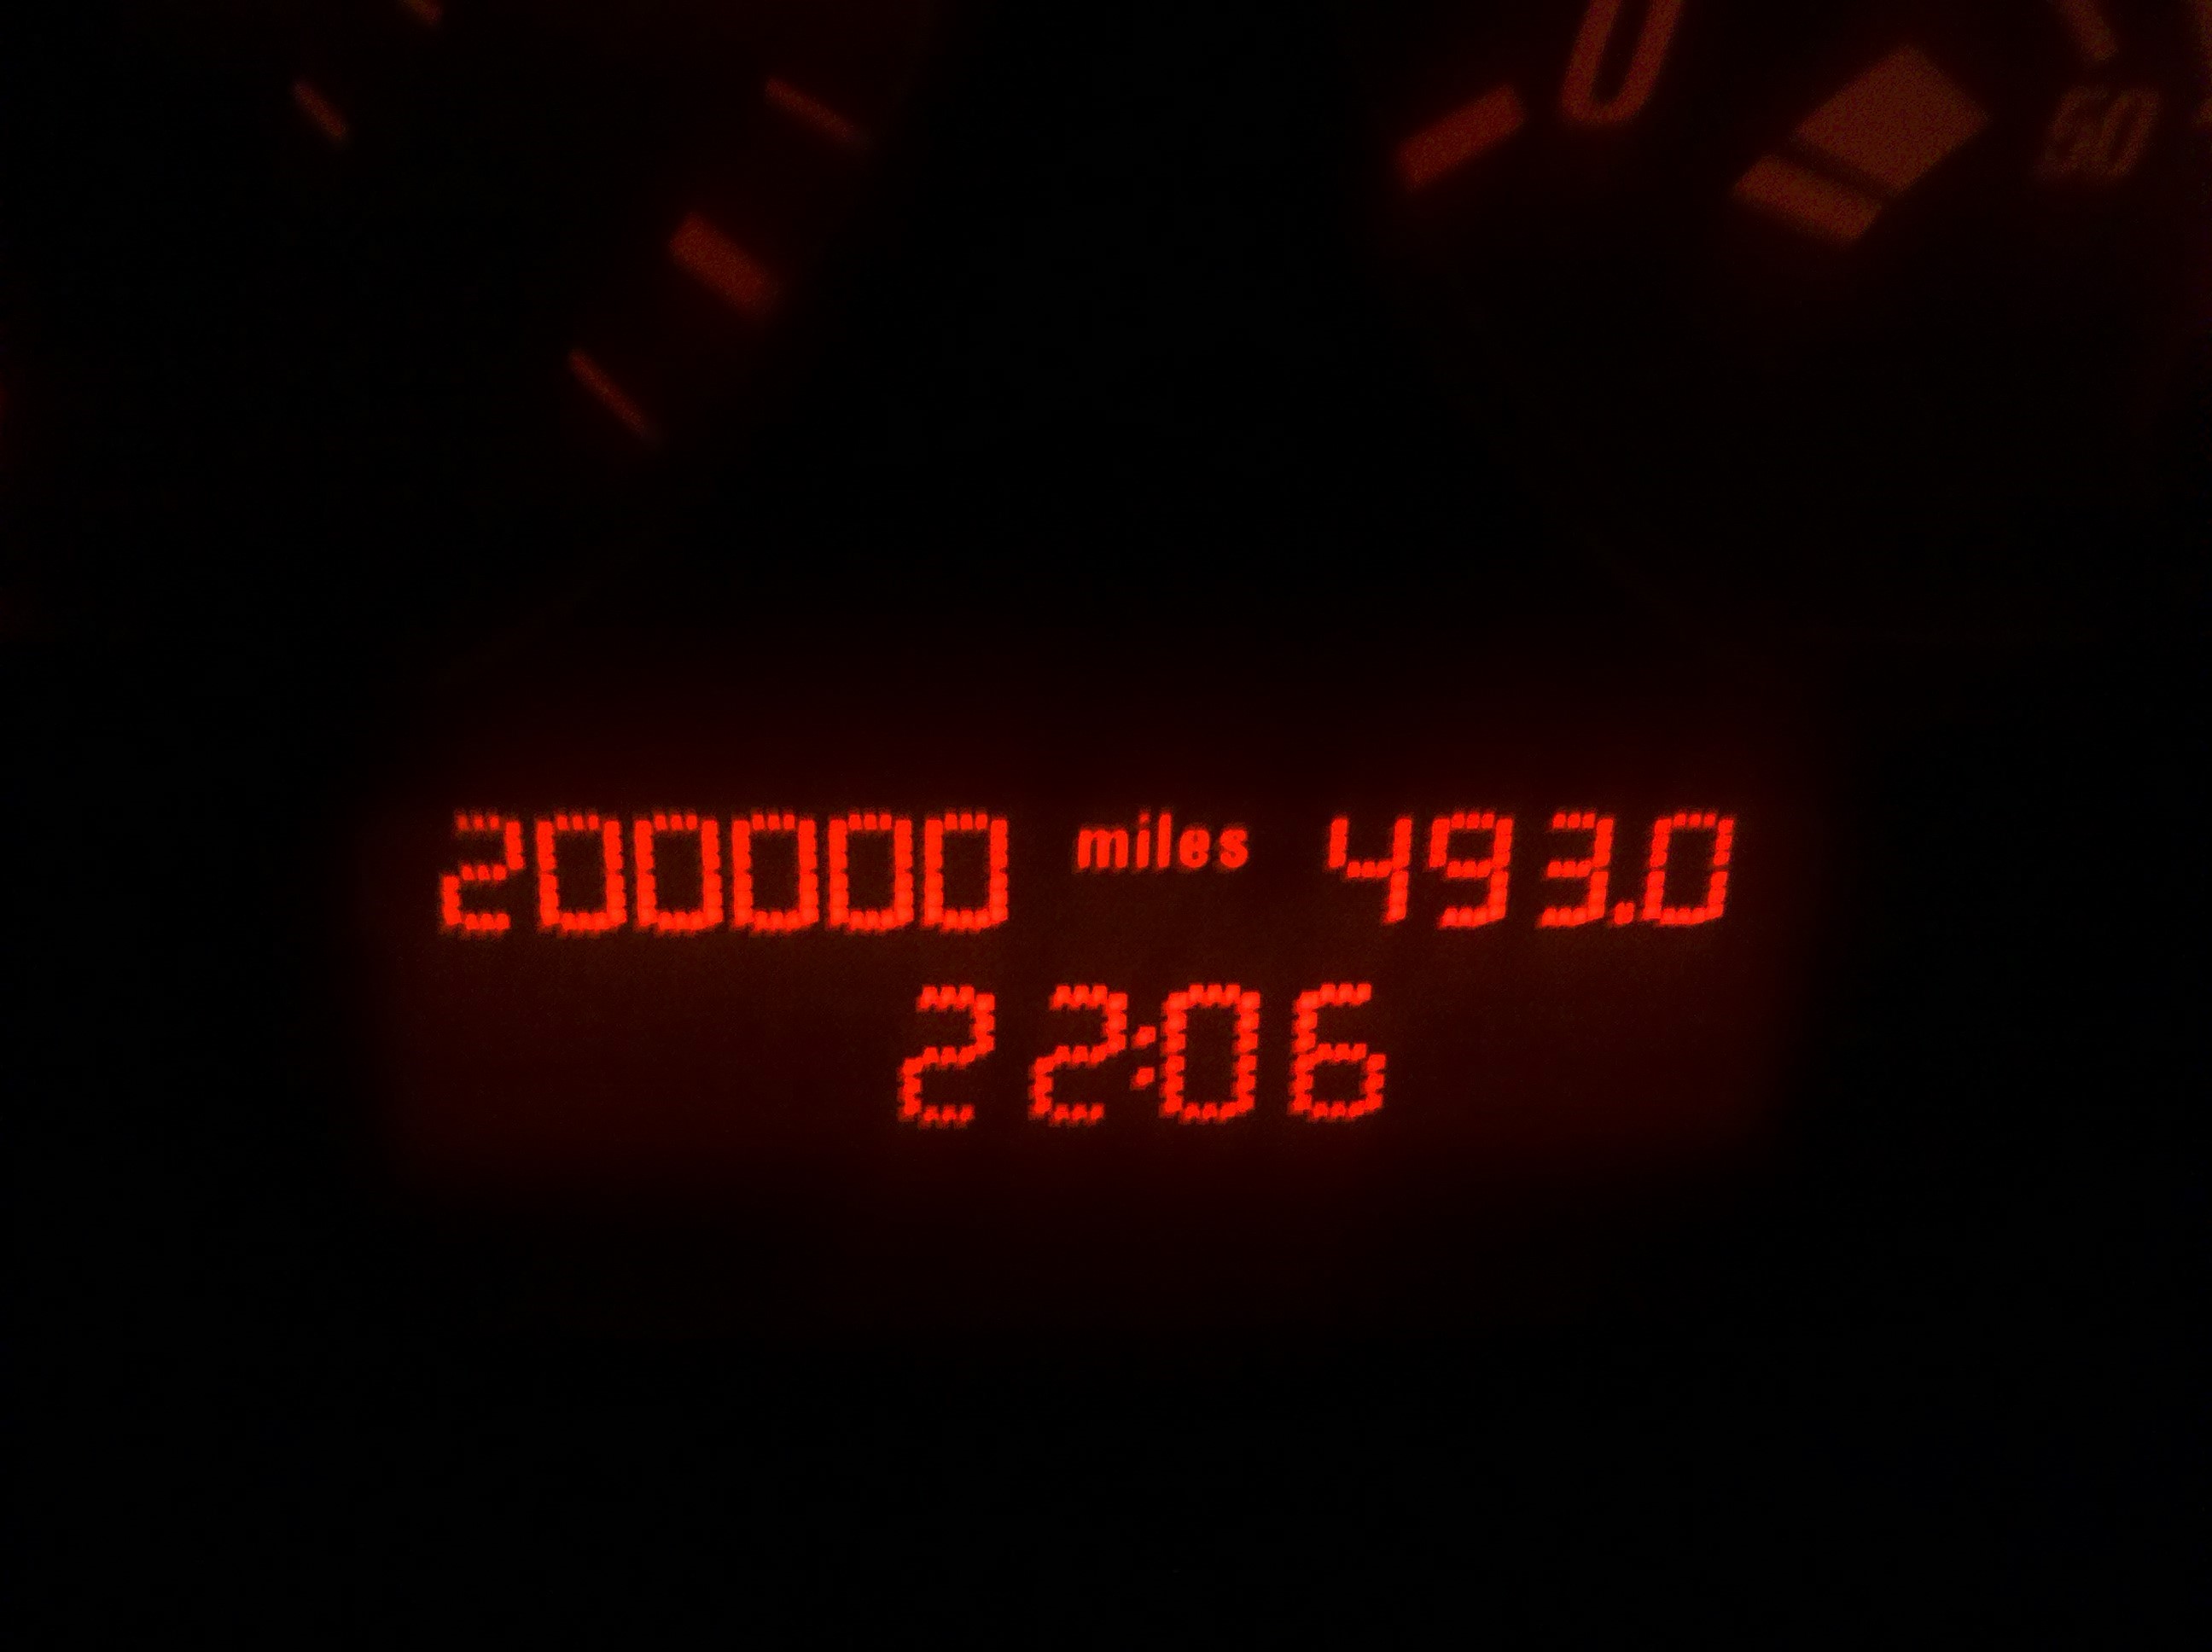 200k miles